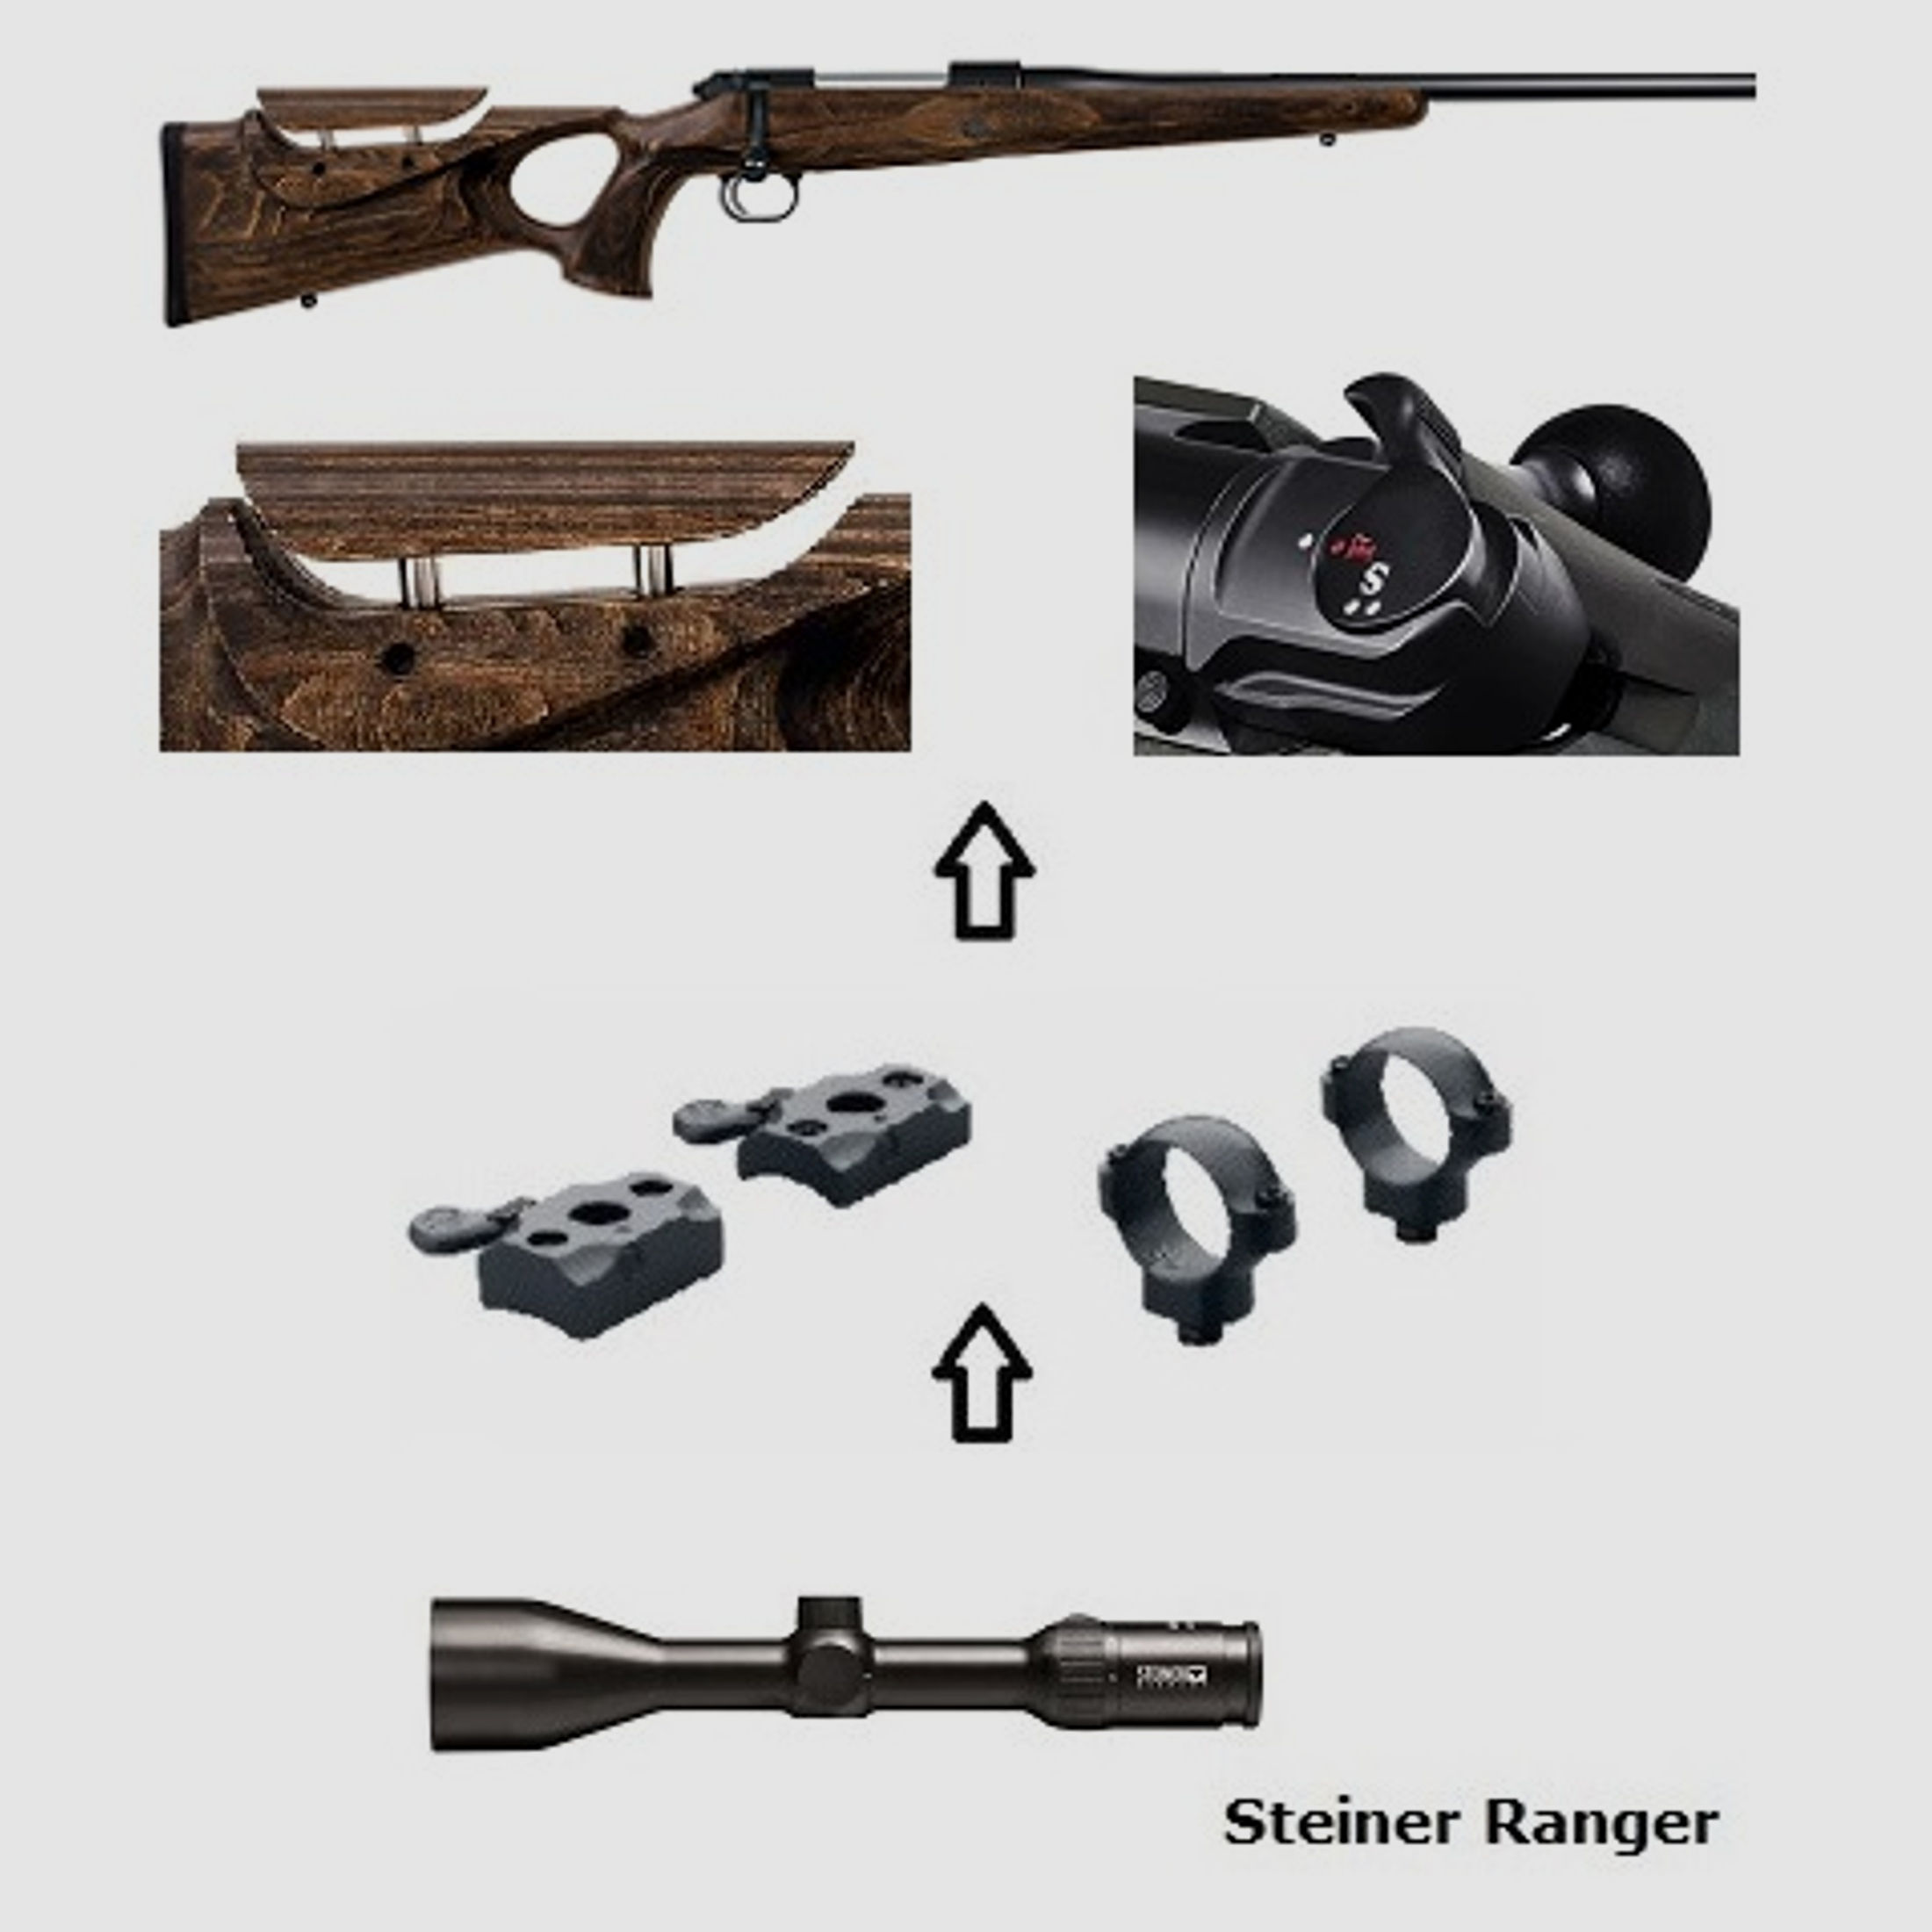 Mauser M12 MAX + Steiner Ranger 3-12x56 + Montage + ... Komplettpaket